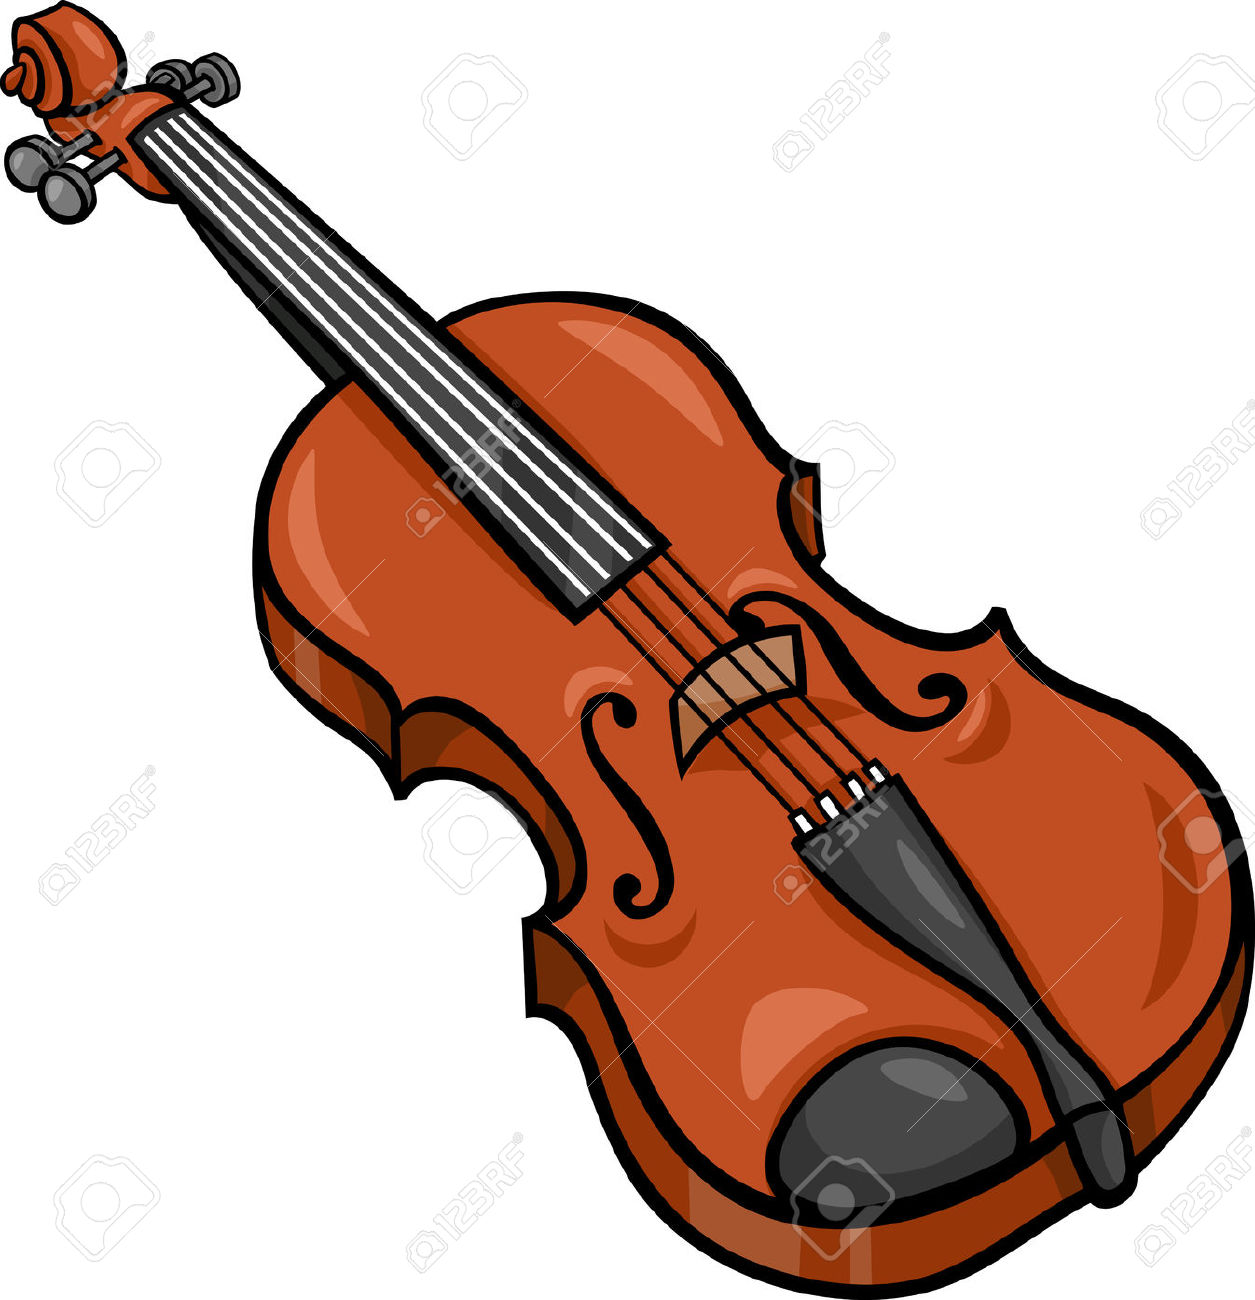 violin: Cartoon Illustration of Violin Musical Instrument Clip Art Illustration